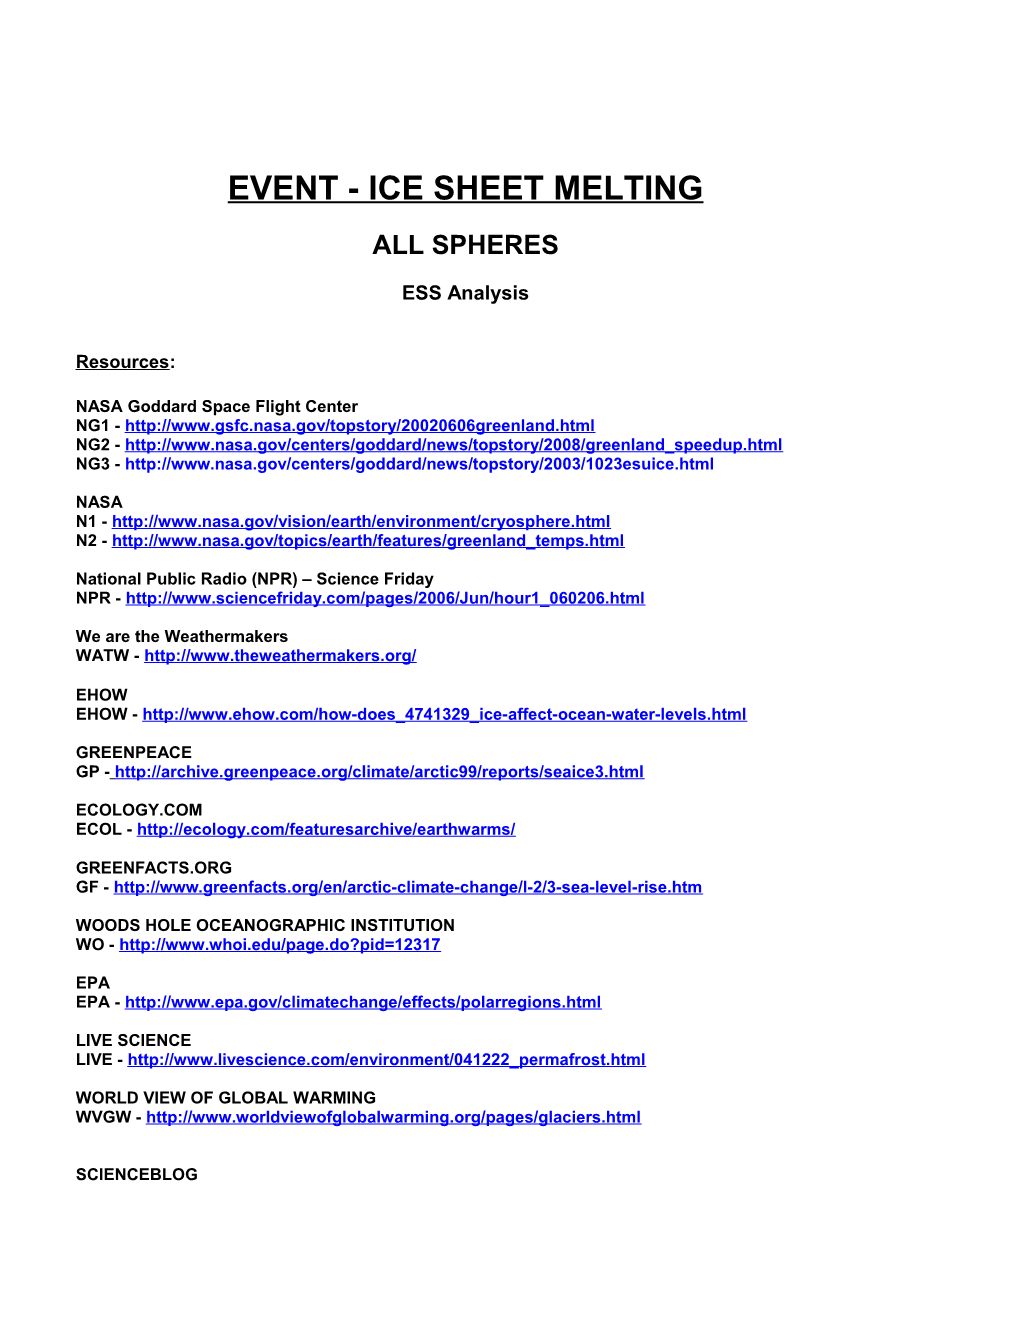 Event - Ice Sheet Melting